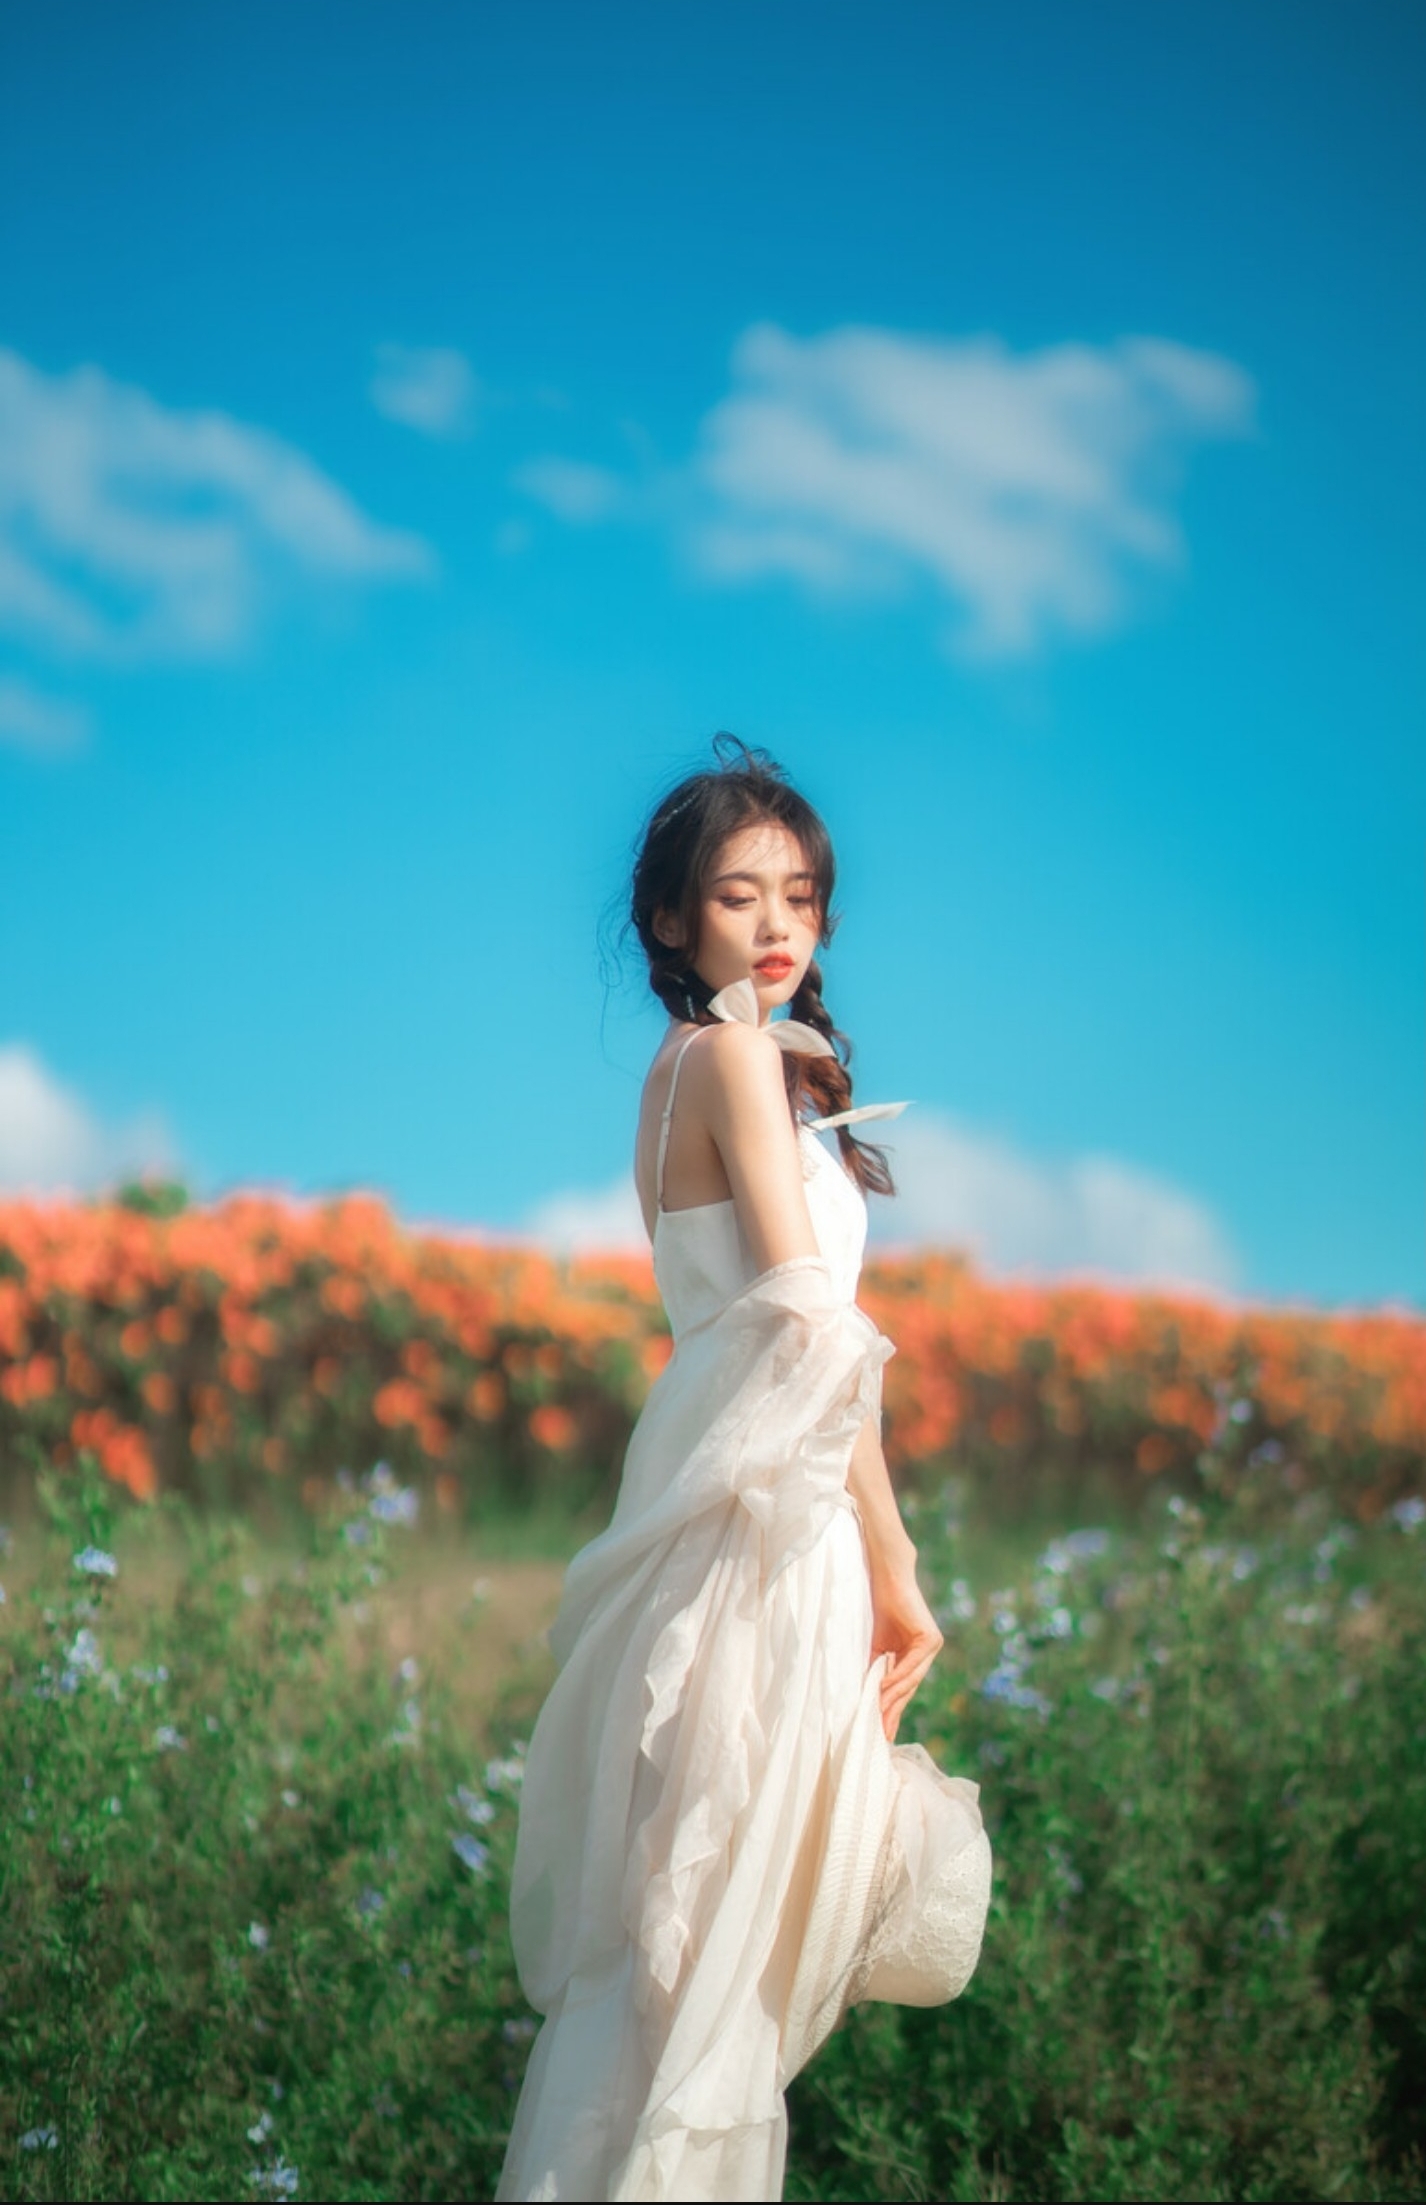 Concept chụp ảnh nàng thơ đẹp với bầu trời xanh đẹp quyến rũ